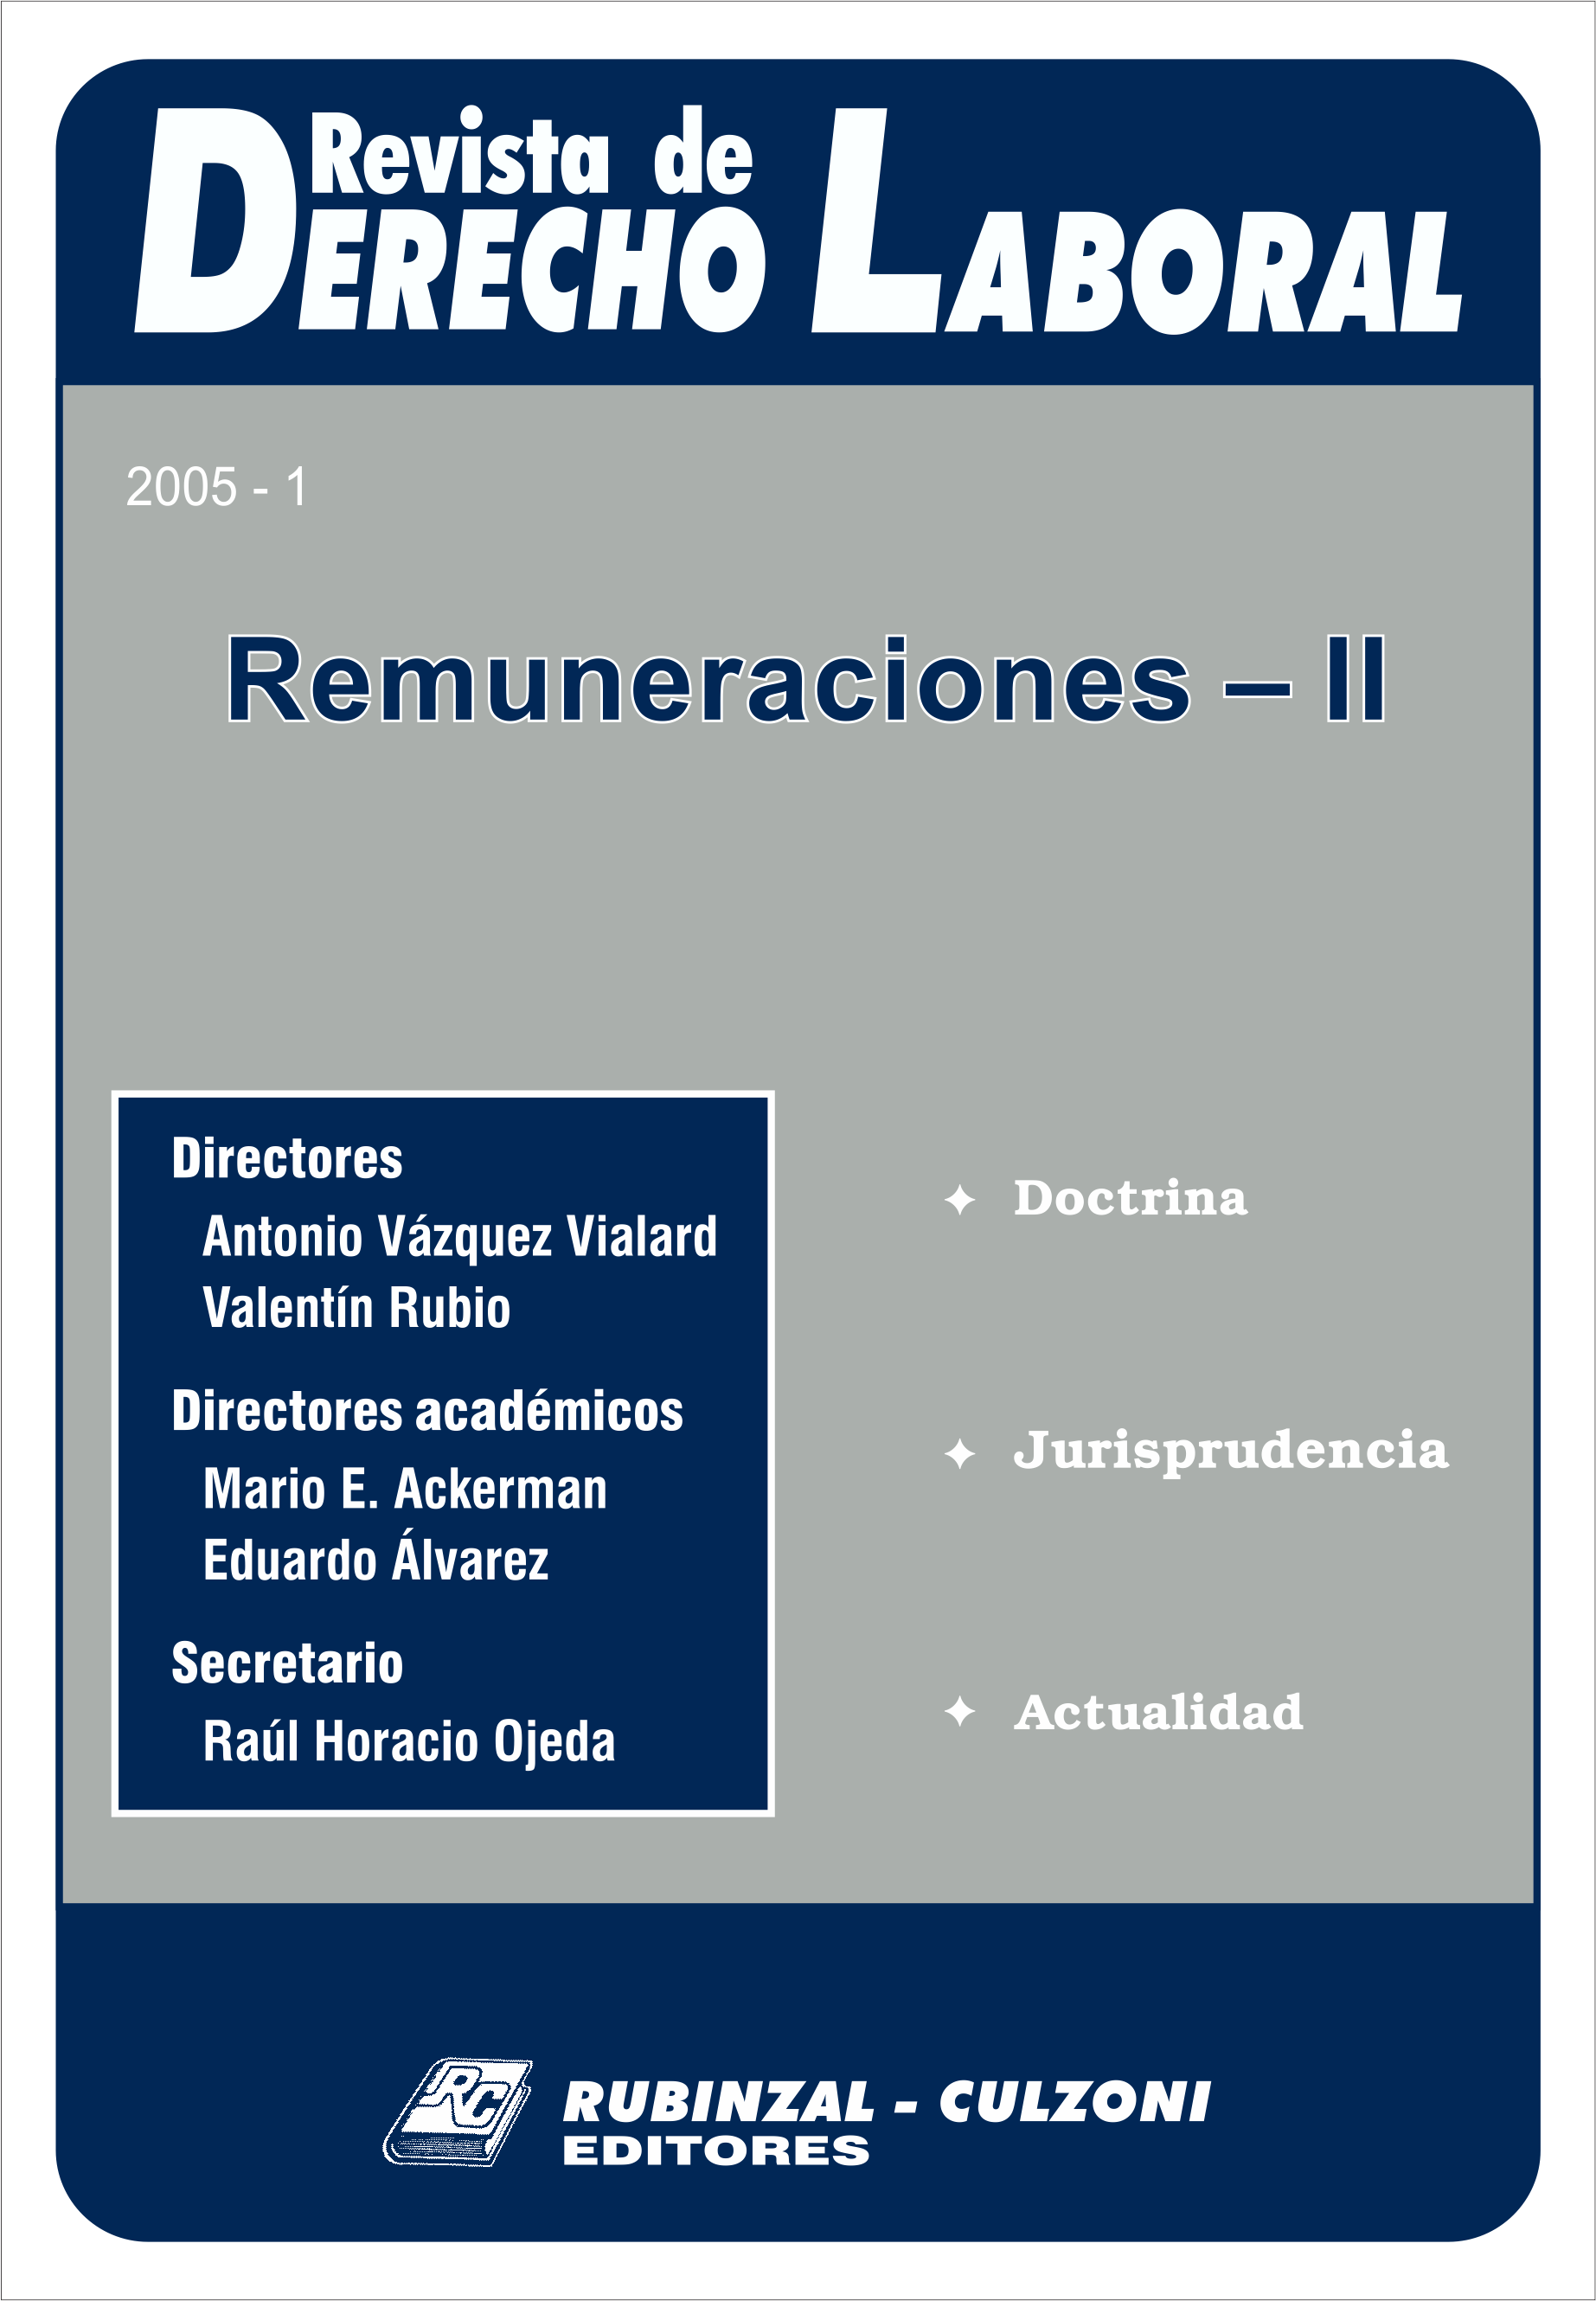 Revista de Derecho Laboral - Remuneraciones II.